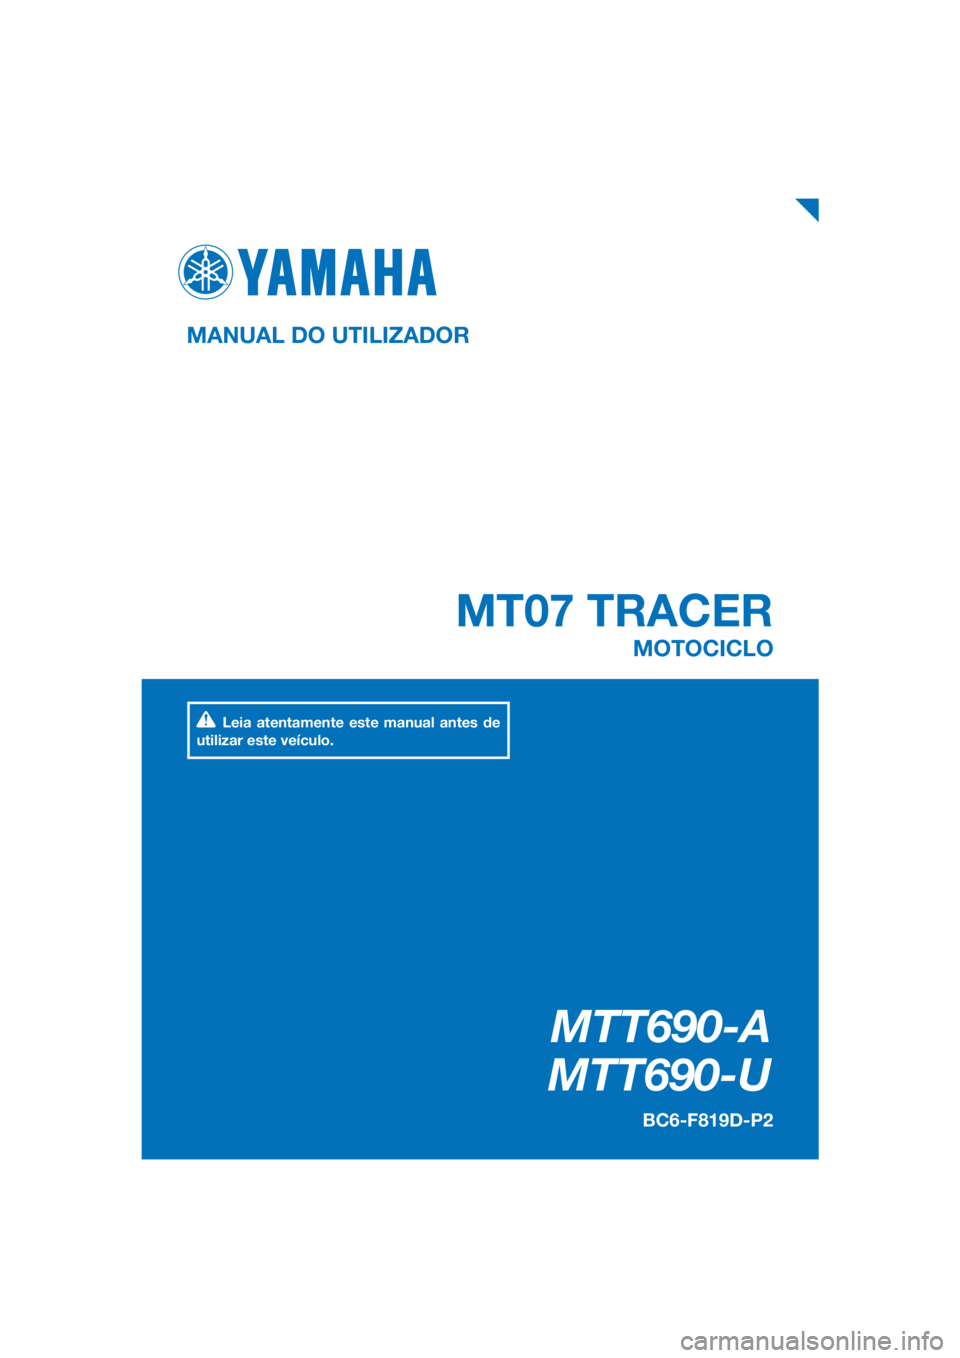 YAMAHA TRACER 700 2017  Manual de utilização (in Portuguese) PANTONE285C
MTT690-A
MTT690-U
MT07 TRACER
MANUAL DO UTILIZADOR
BC6-F819D-P2
MOTOCICLO
Leia atentamente este manual antes de 
utilizar este veículo.
[Portuguese  (P)] 